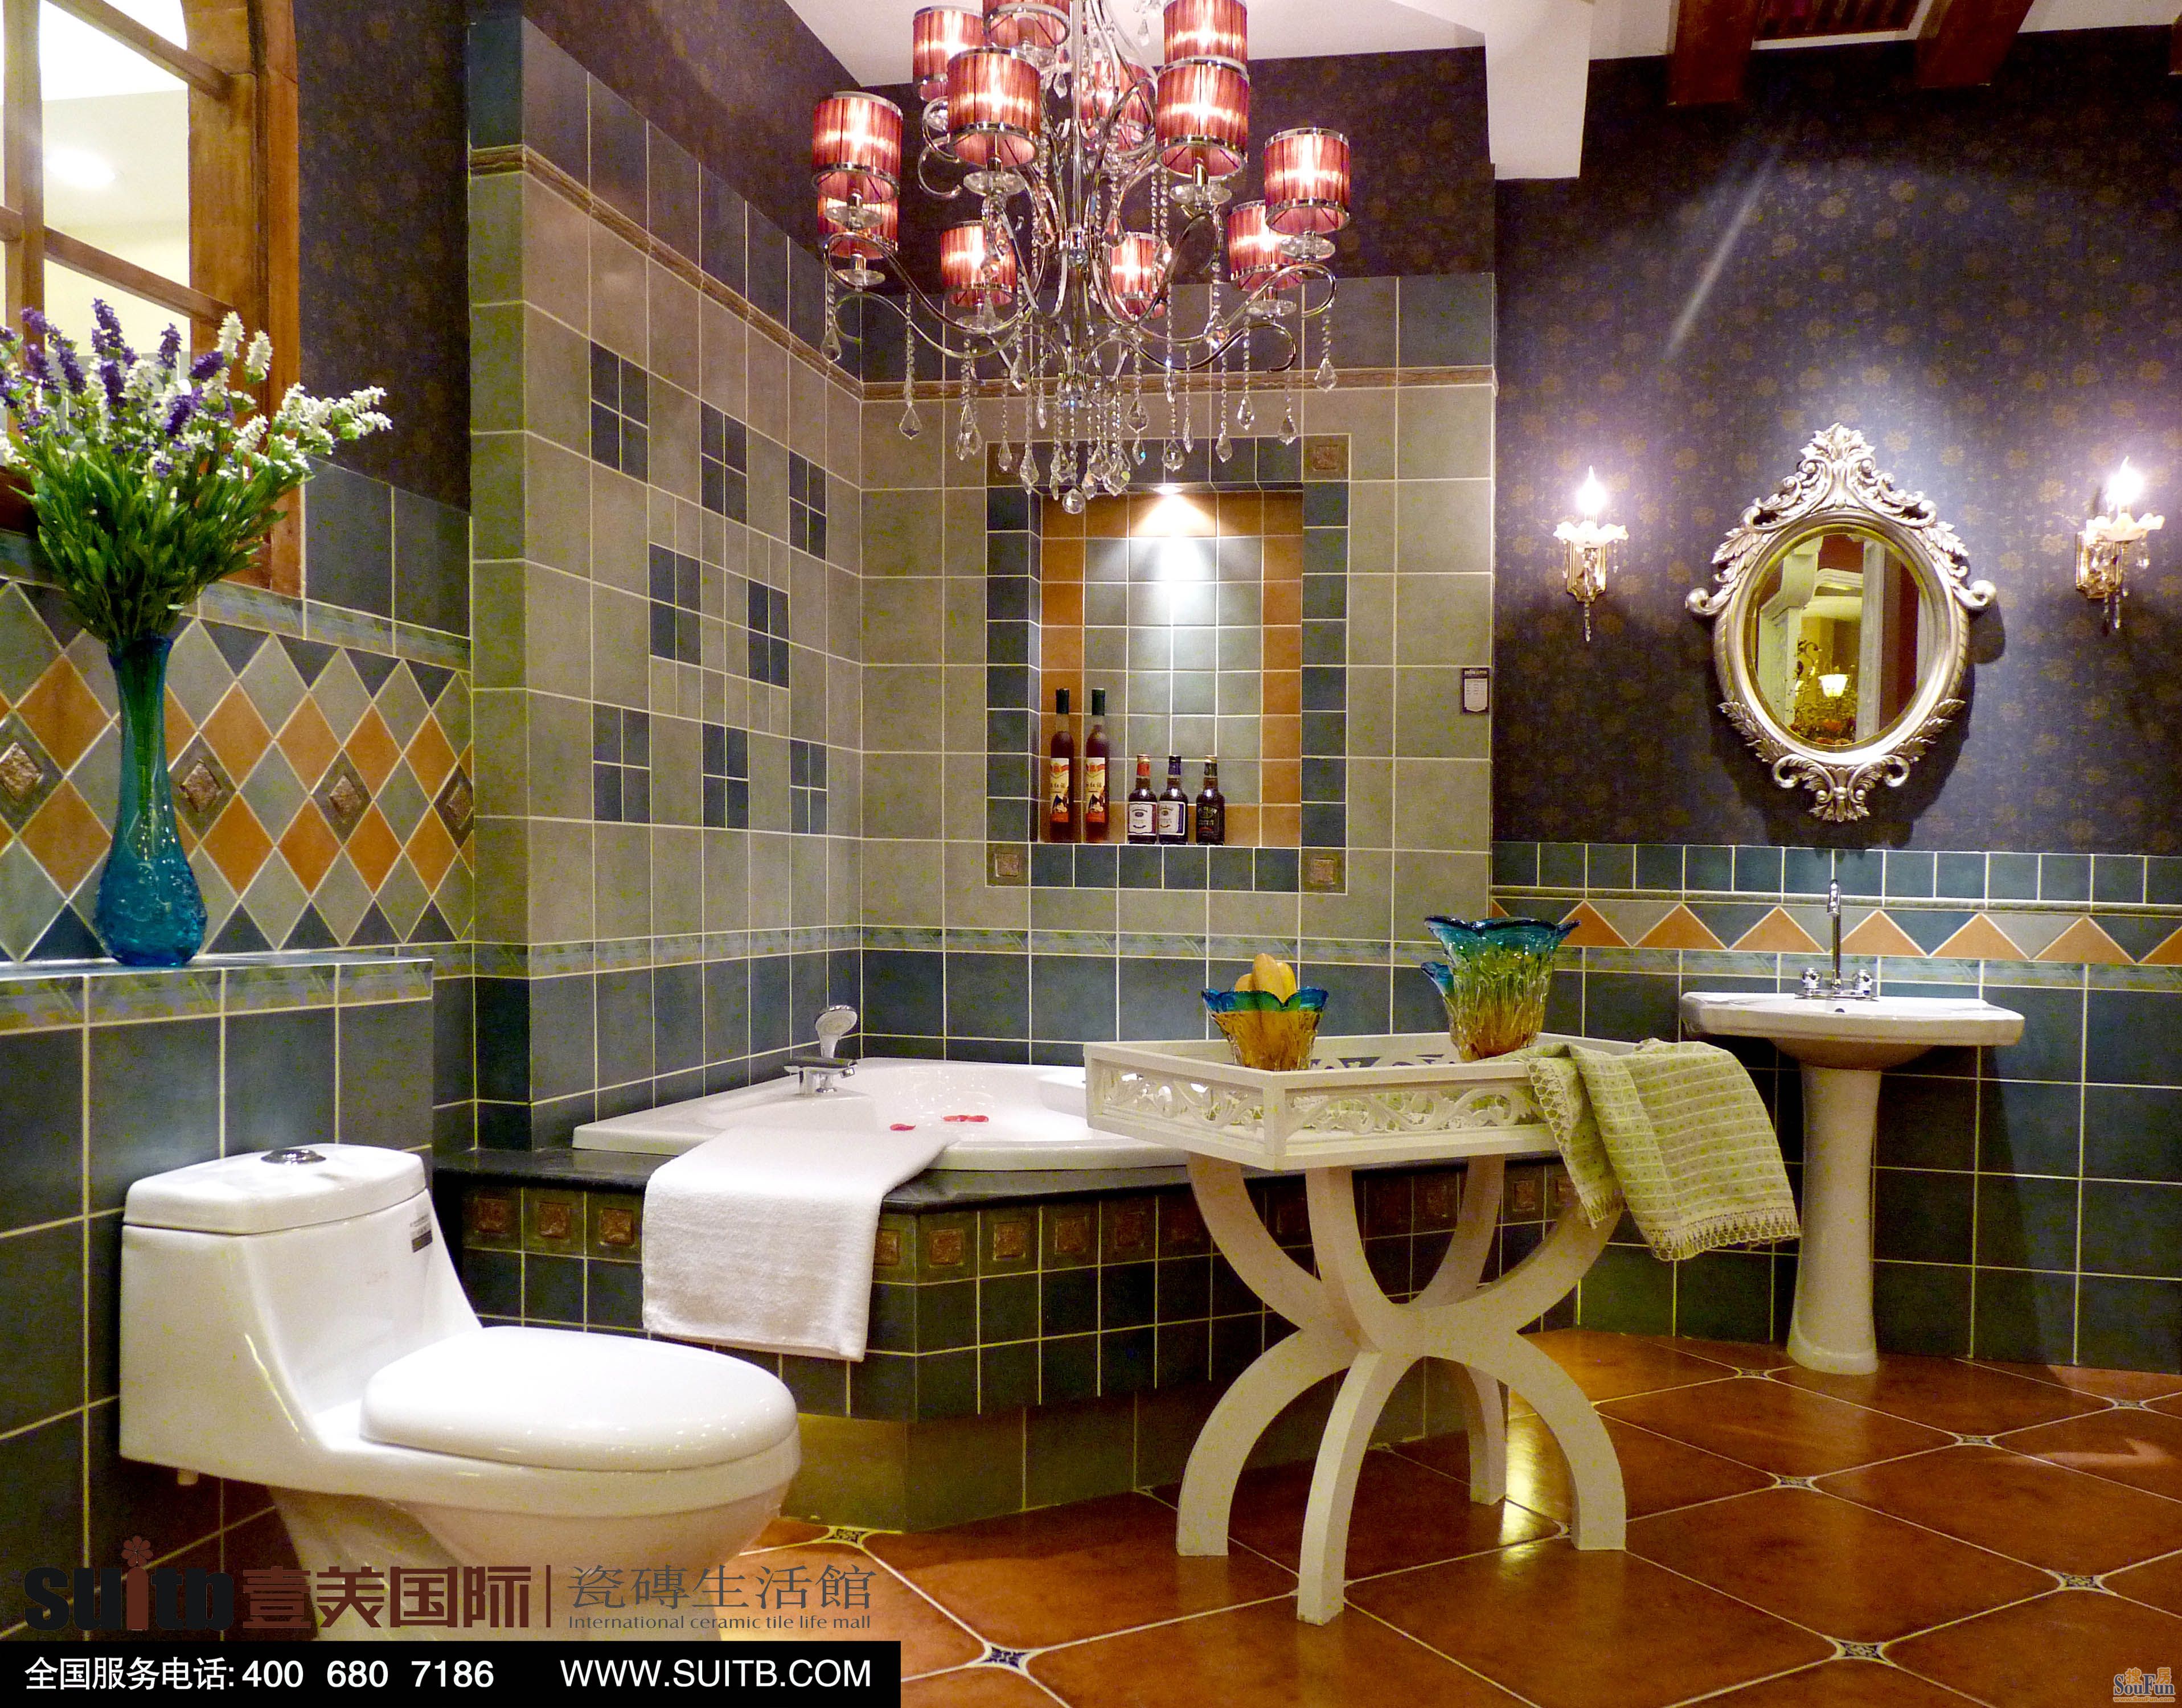 黑白餐厅微晶石瓷砖装修效果图 – 设计本装修效果图